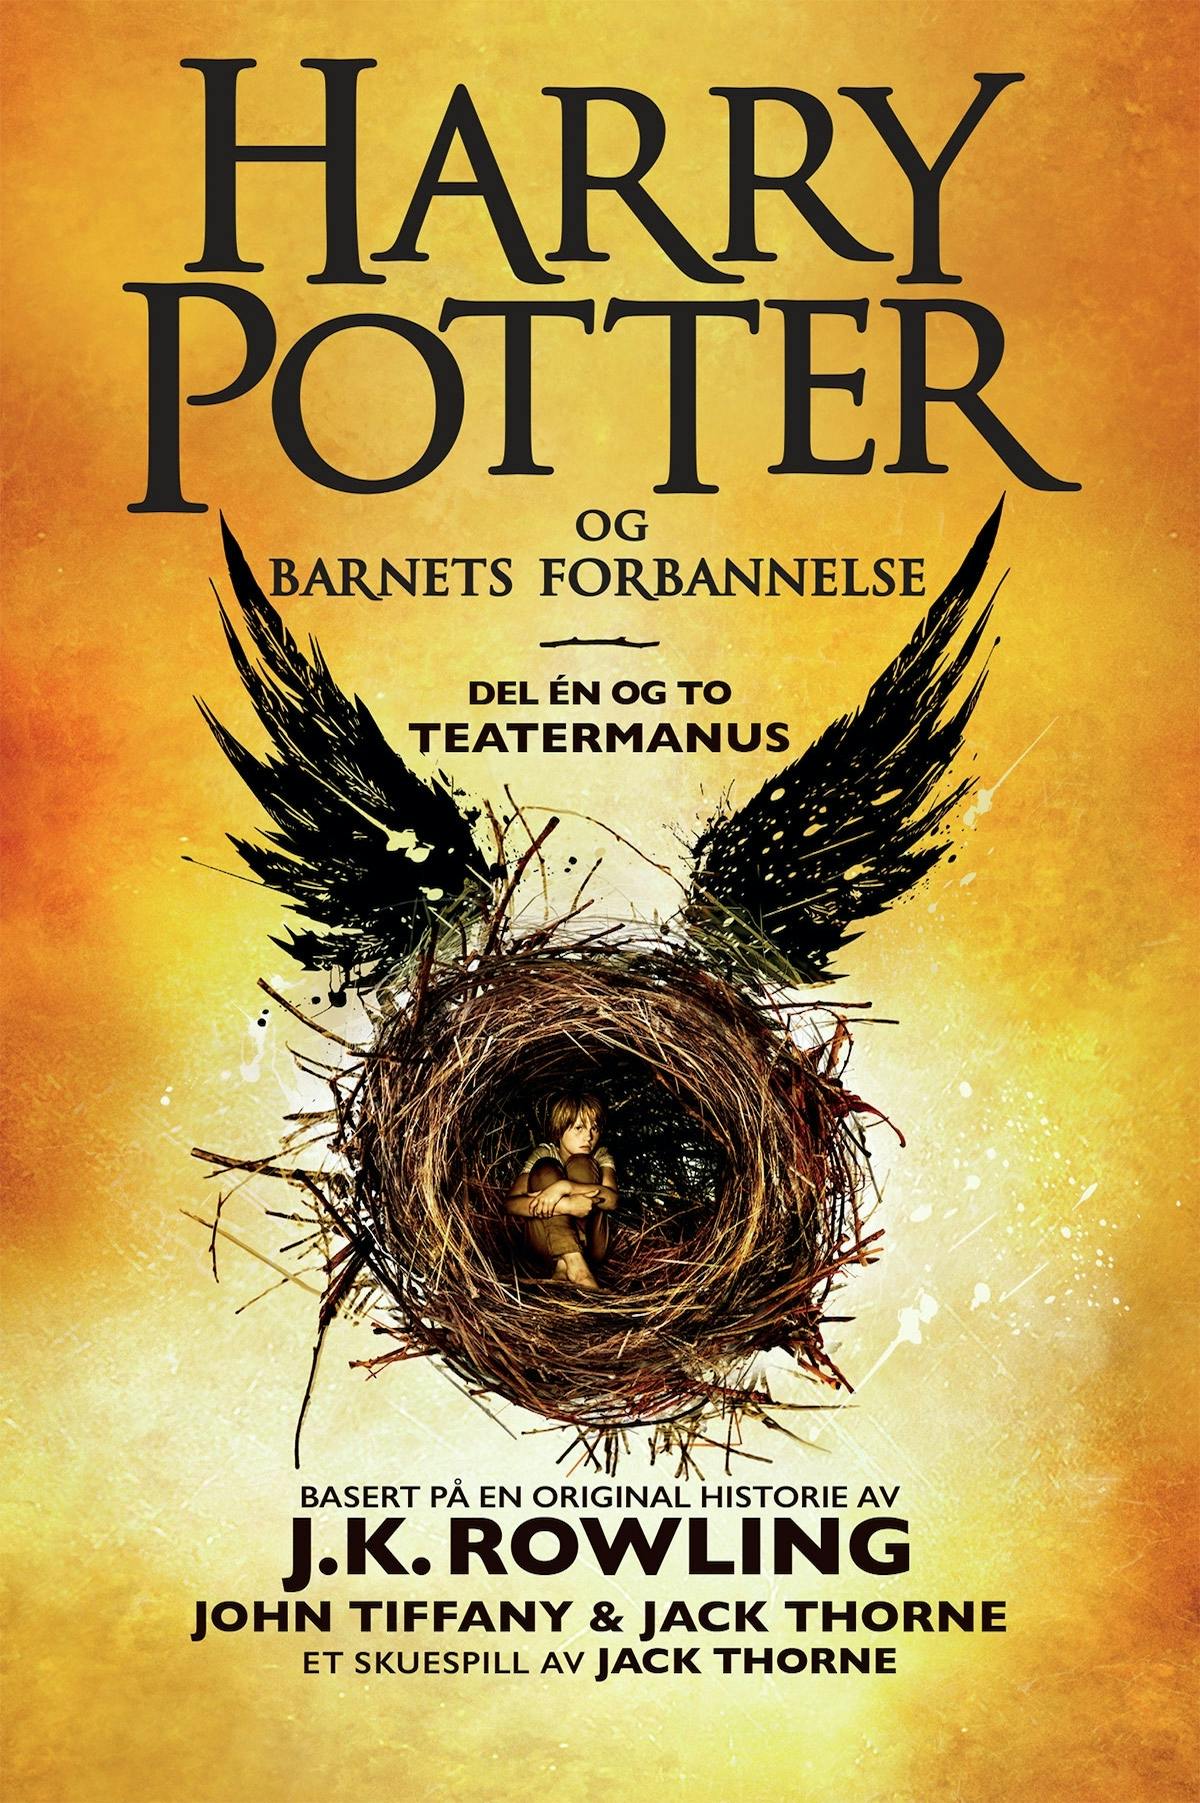 Harry Potter og Barnets forbannelse: Det offisielle manuskriptet til den første London-oppsetningen. Det definitive teatermanuset - undefined